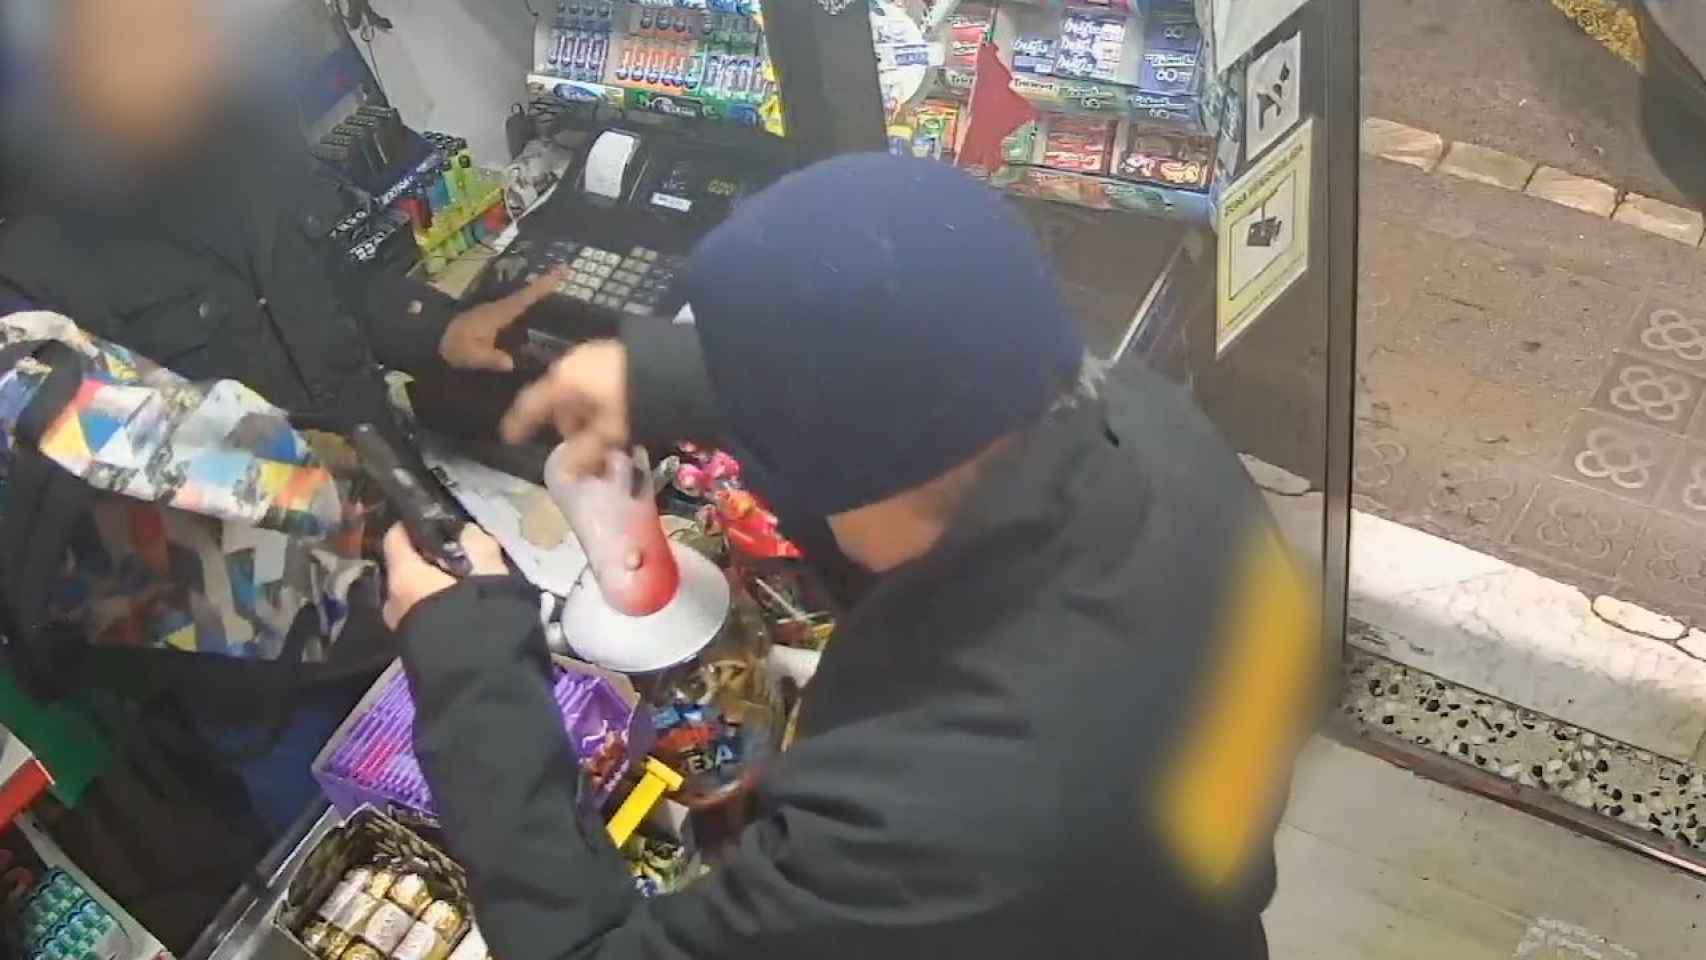 Imagen extraída de una cámara de seguridad de uno de los supermercados que atracaron los ladrones / MOSSOS D'ESQUADRA